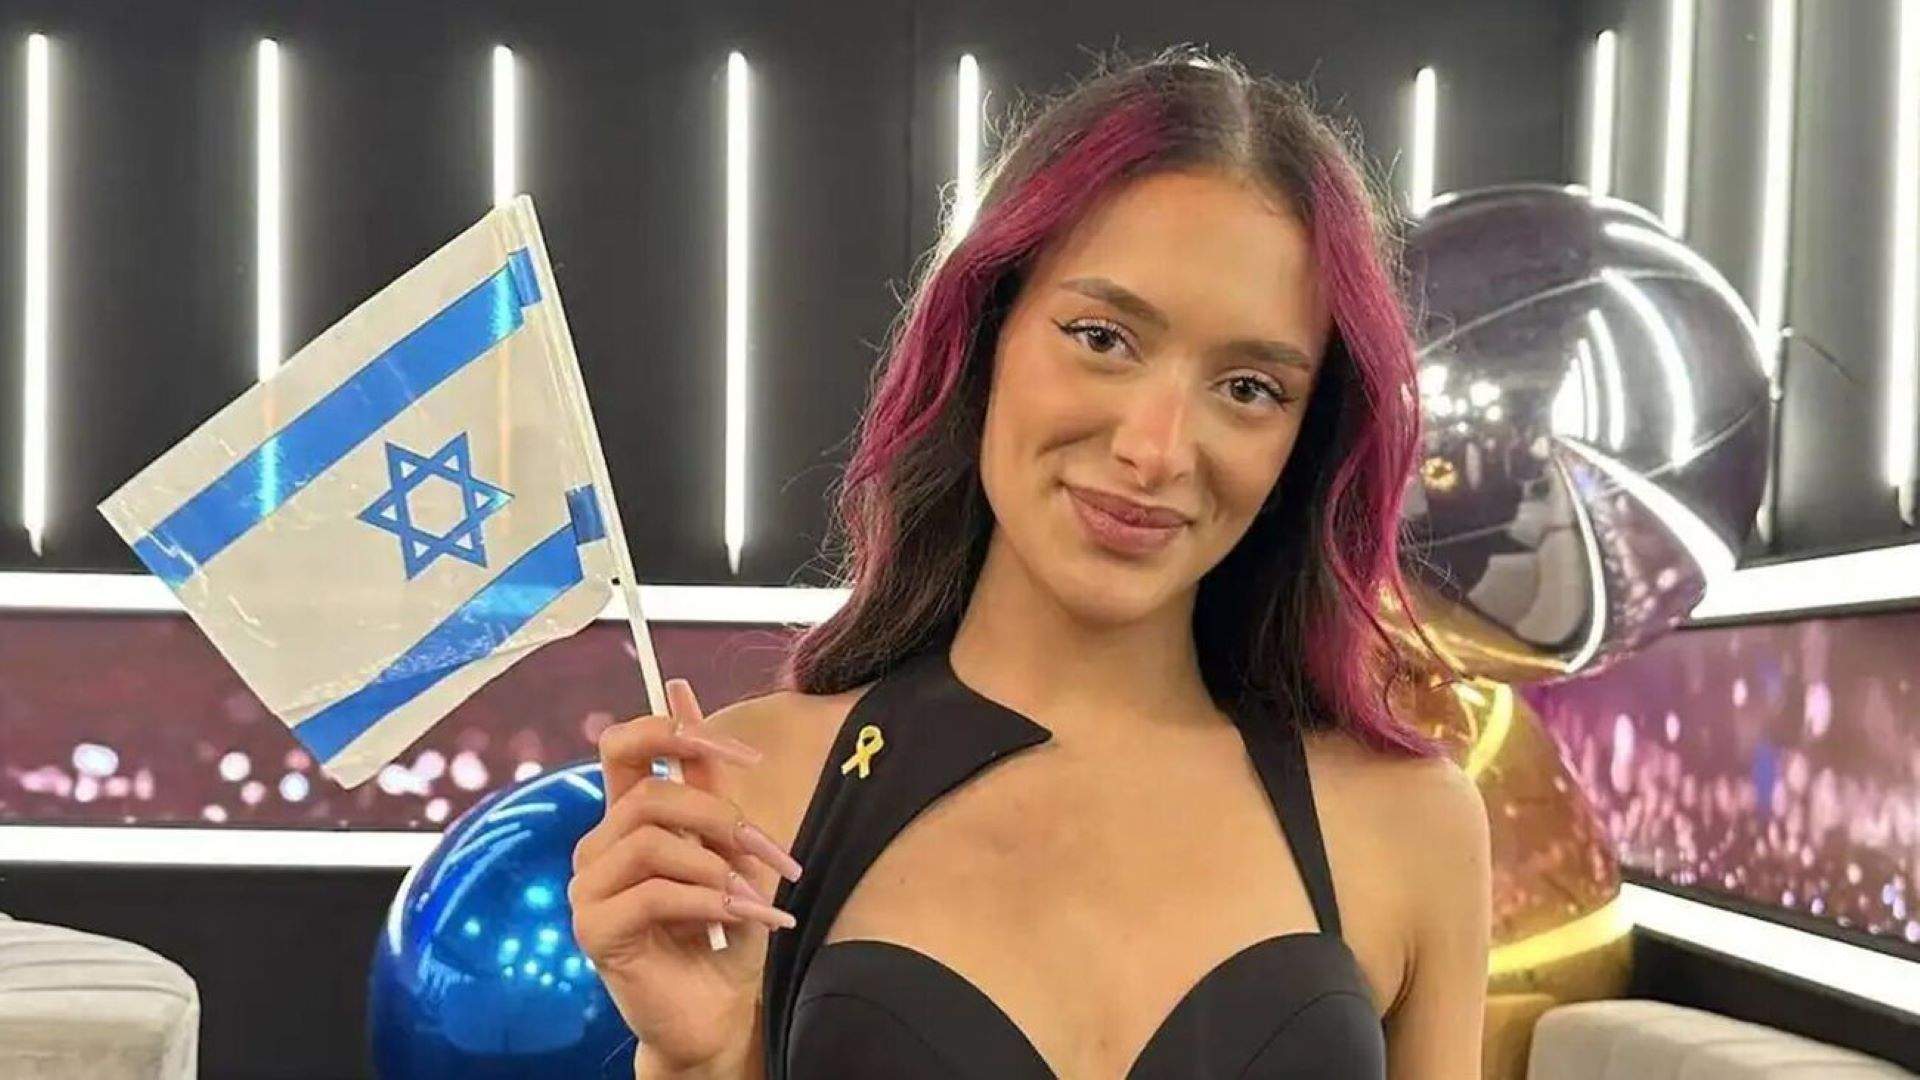 Israel esquiva el veto y participará en Eurovisión con 'Hurricane', una canción sin contenido político